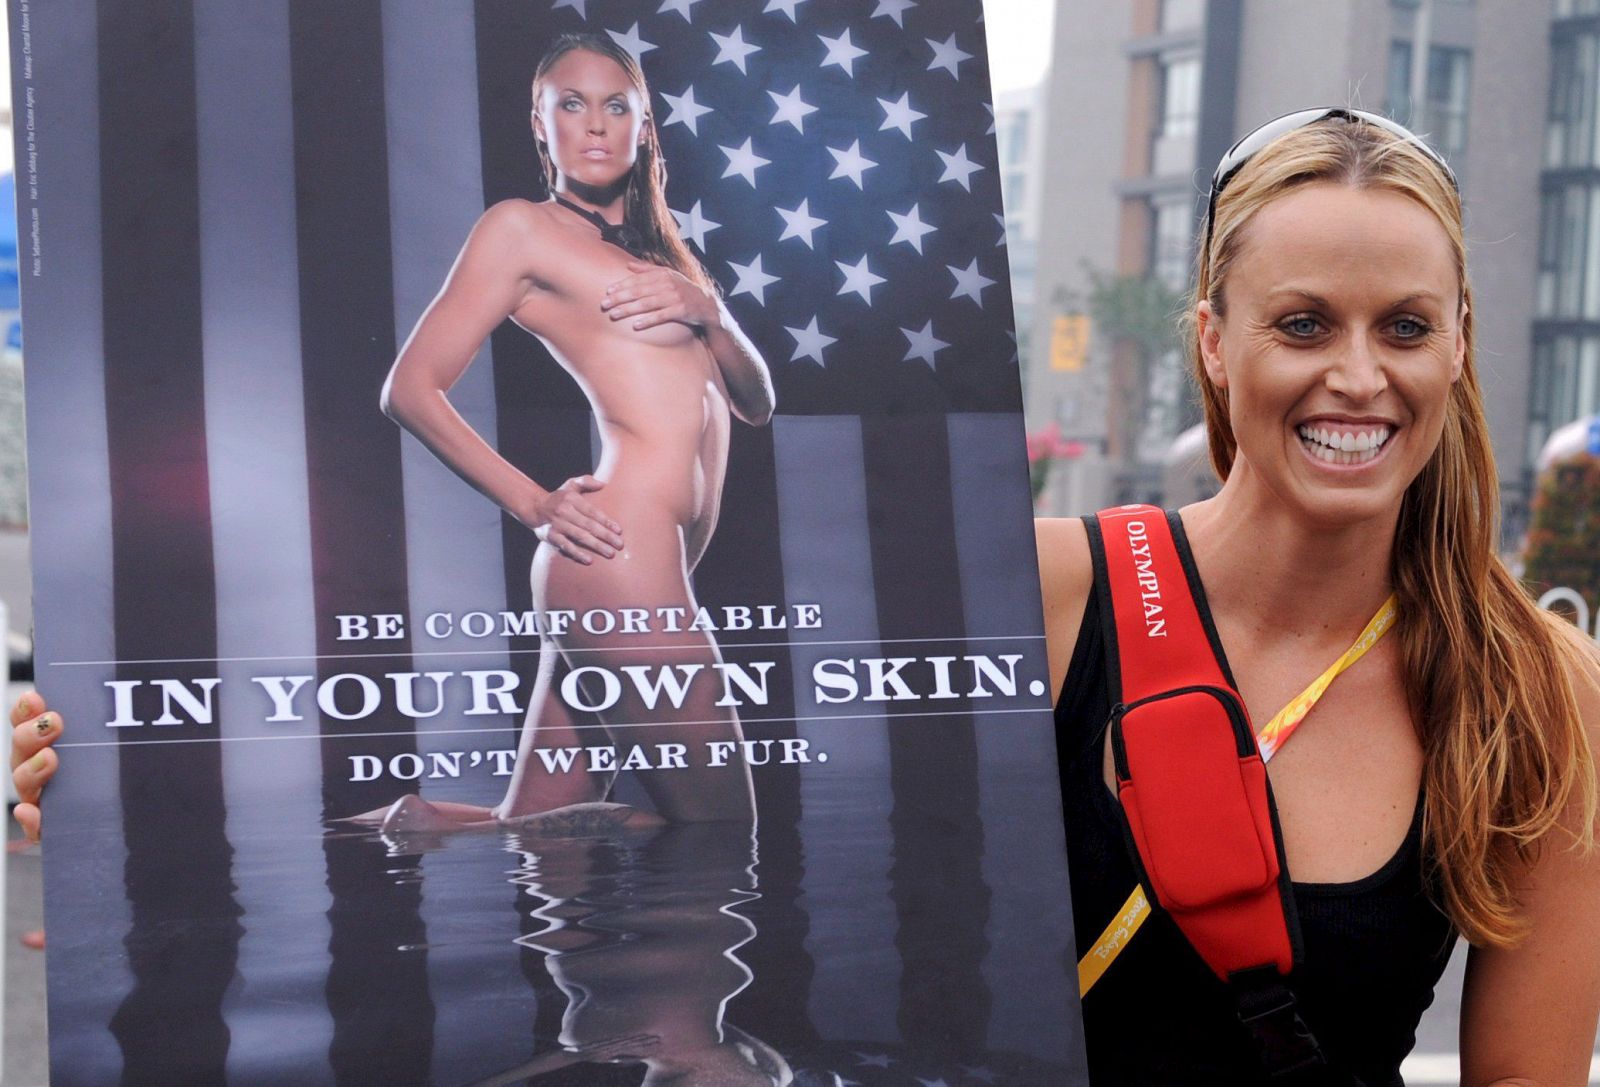 La nadadora estadounidense, doble campeona olímpica, colaboró en una campaña en contra de la exportación de pieles.